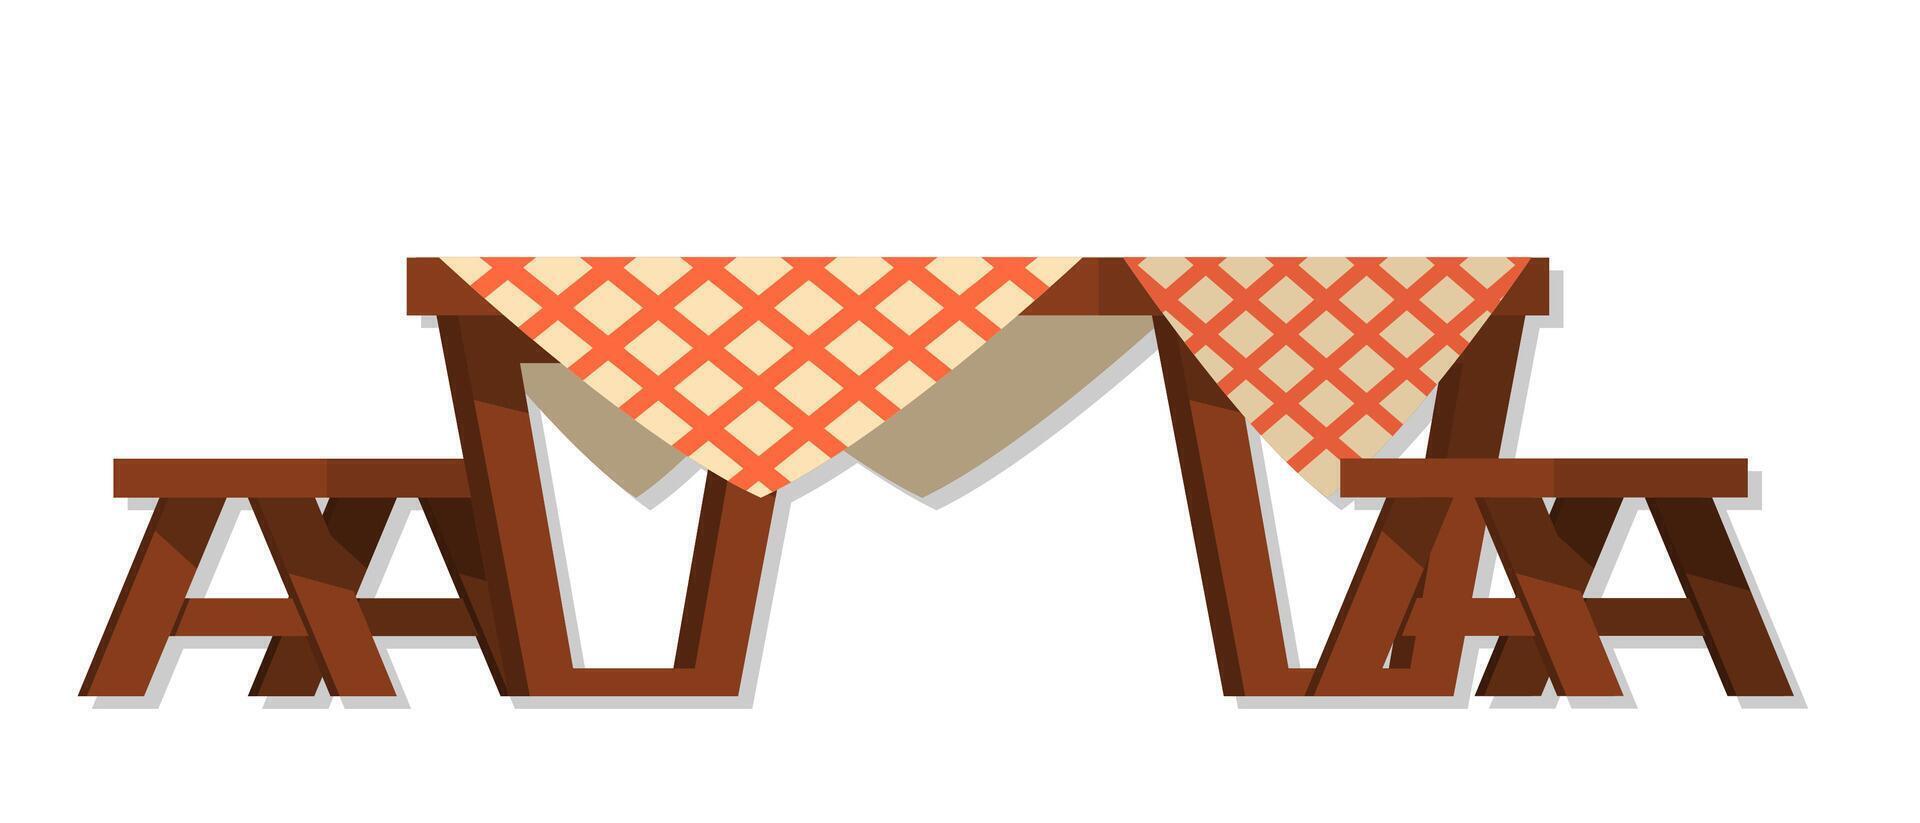 Holz Essen Tabelle mit Tischdecke und Stühle Karikatur Illustration vektor